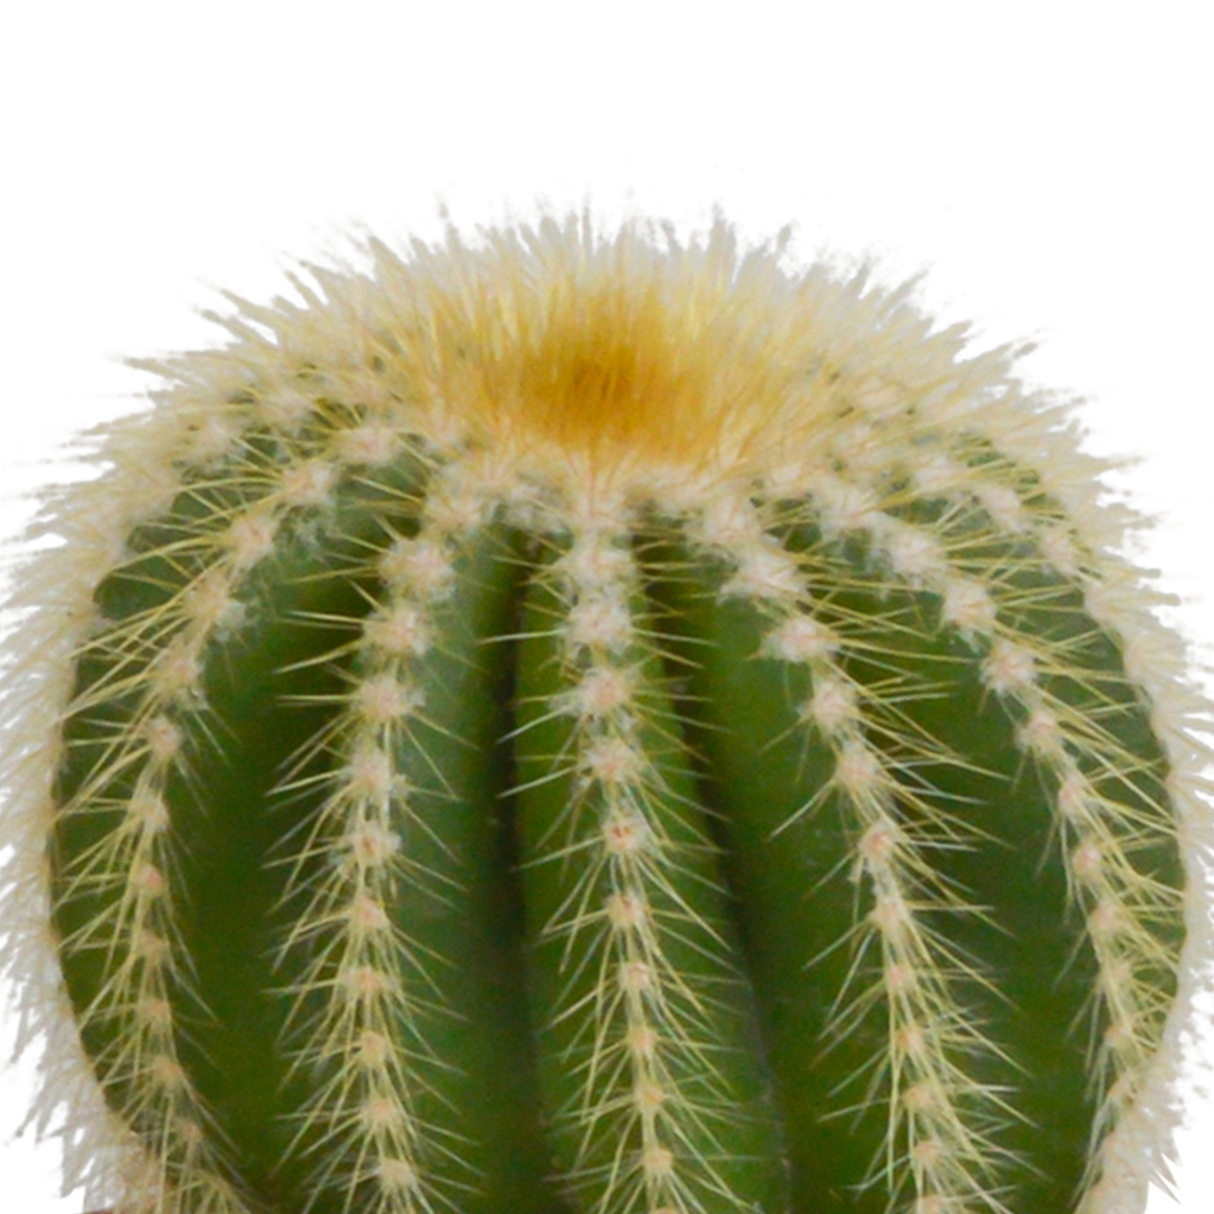 Caja de cactus y sus maceteros blancos - Juego de 3 plantas, h18cm